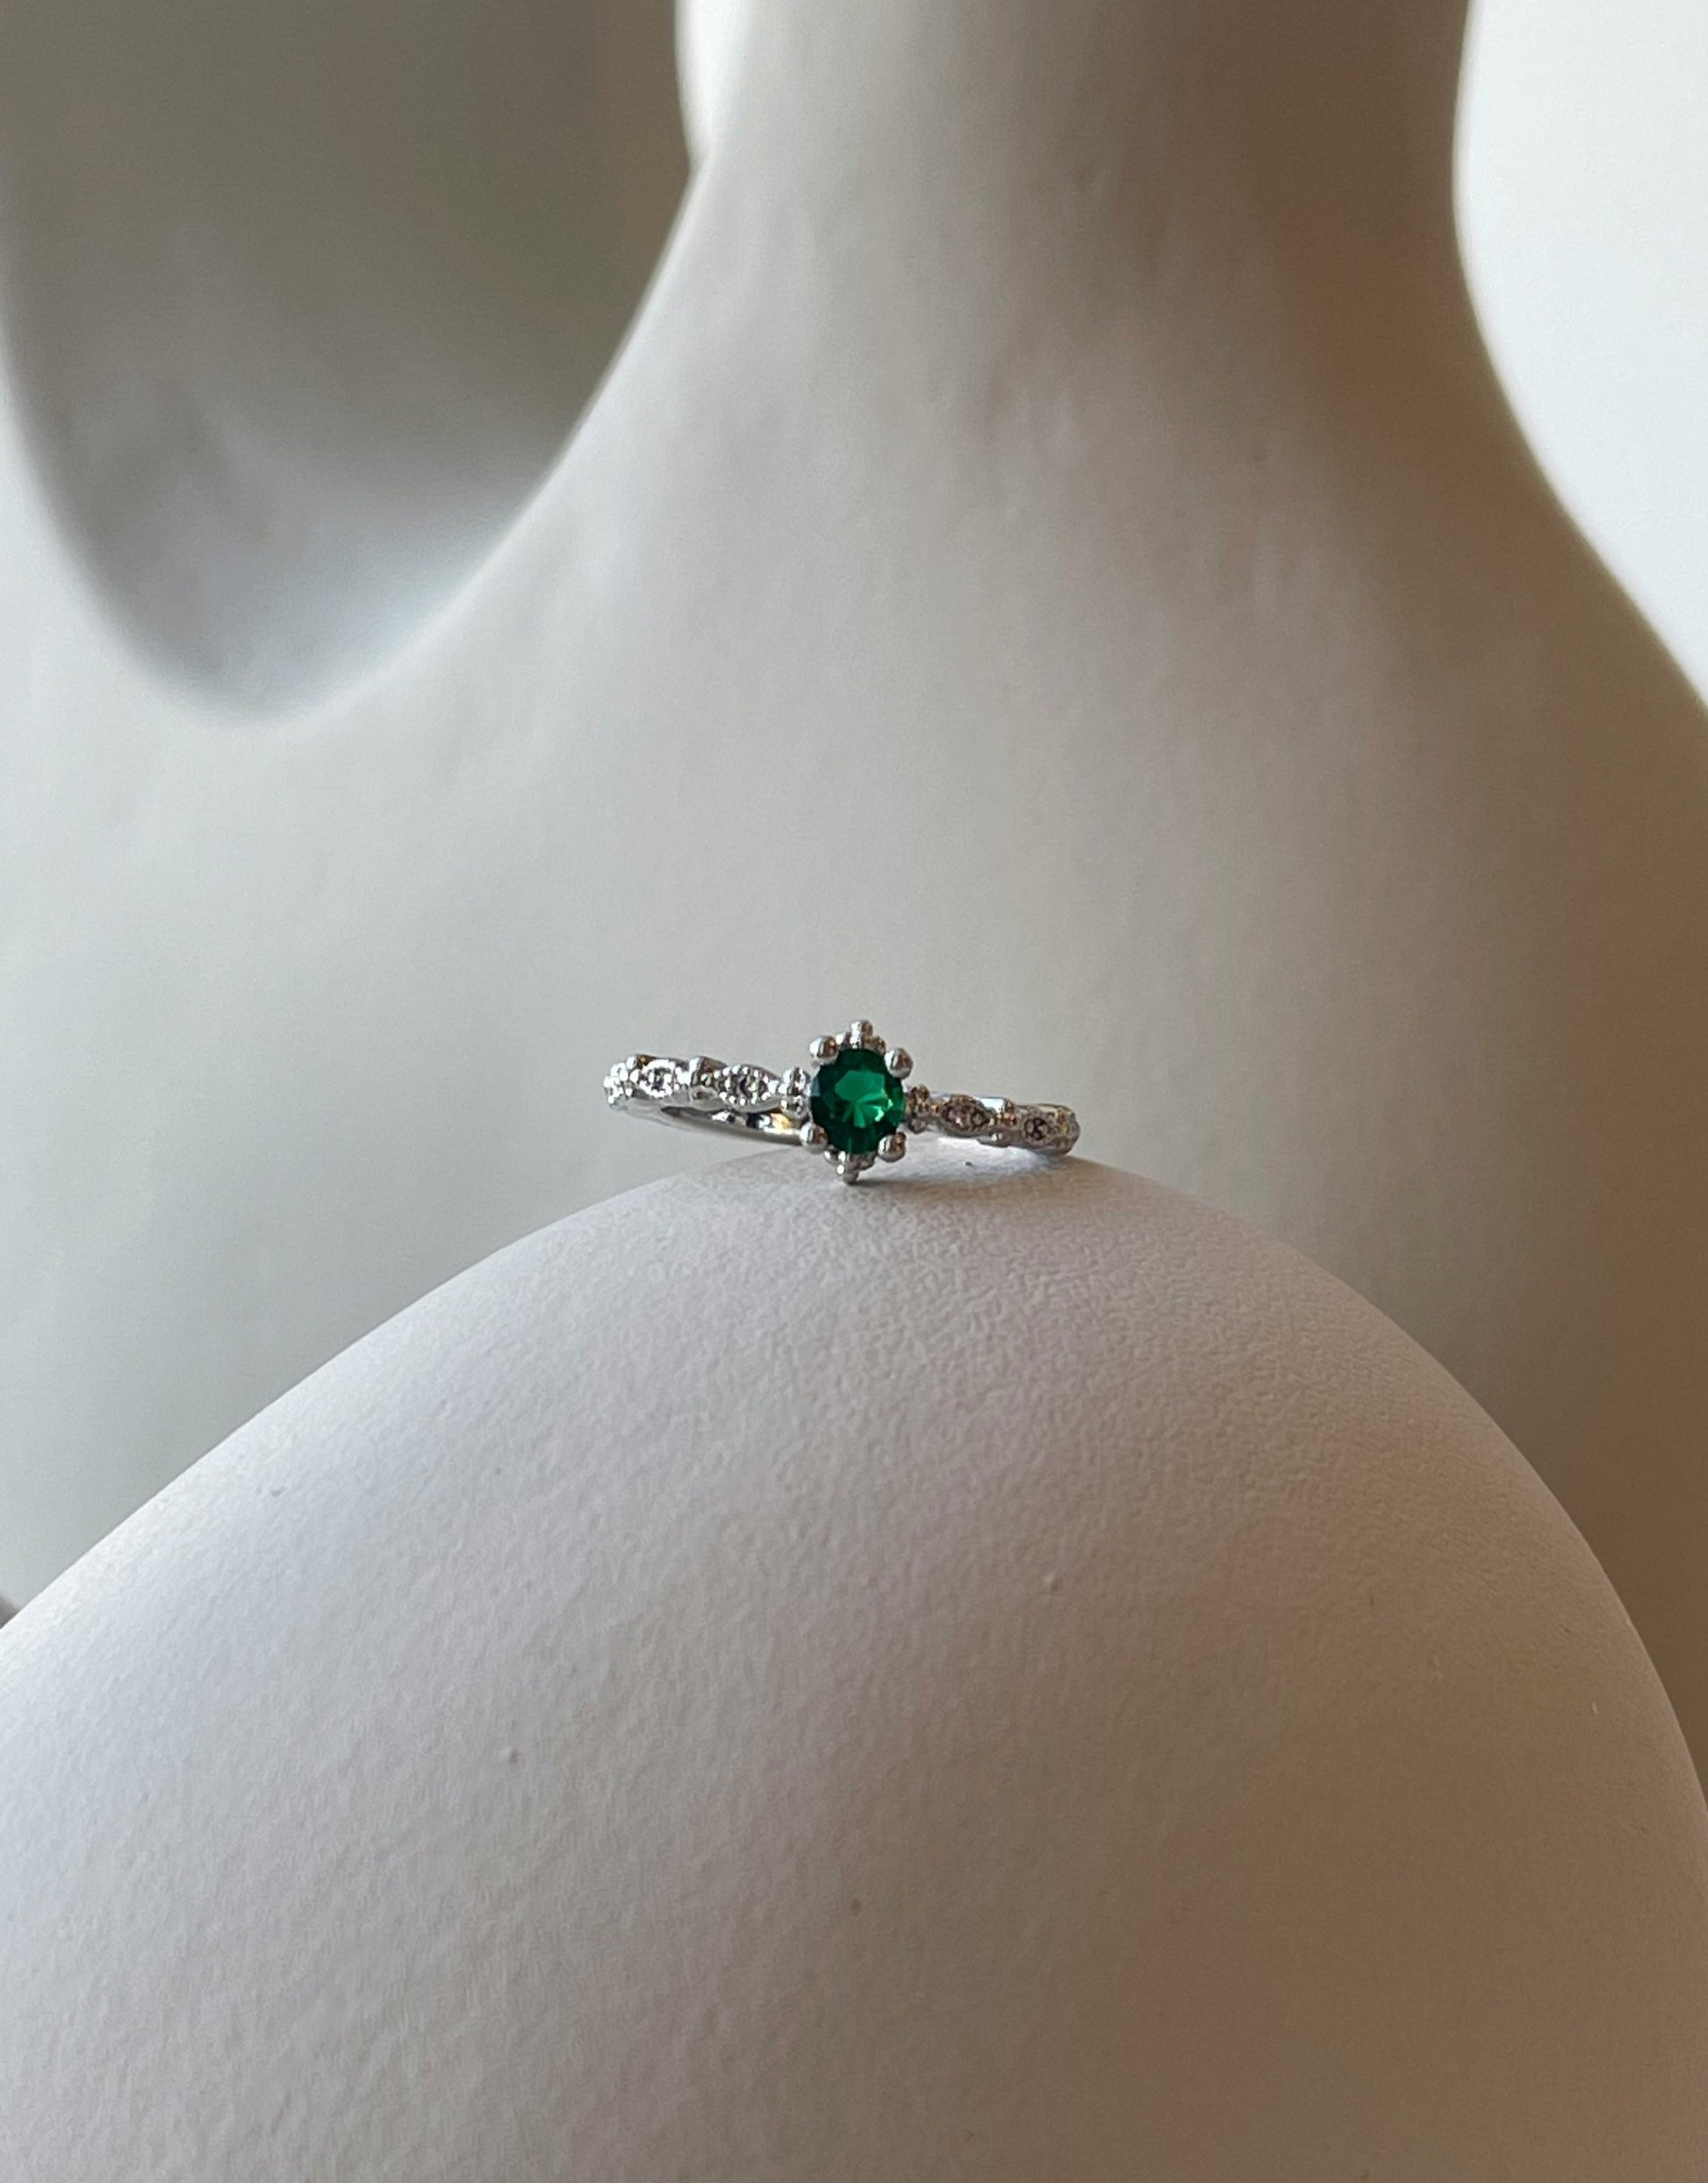 Nova ring i sølv.  Elegant ring med de fineste detaljer samt en flot grøn zircon sten.  Materiale: S925 sterling sølv, zircon Mål: Justerbar, zircon-stenen er 3MM